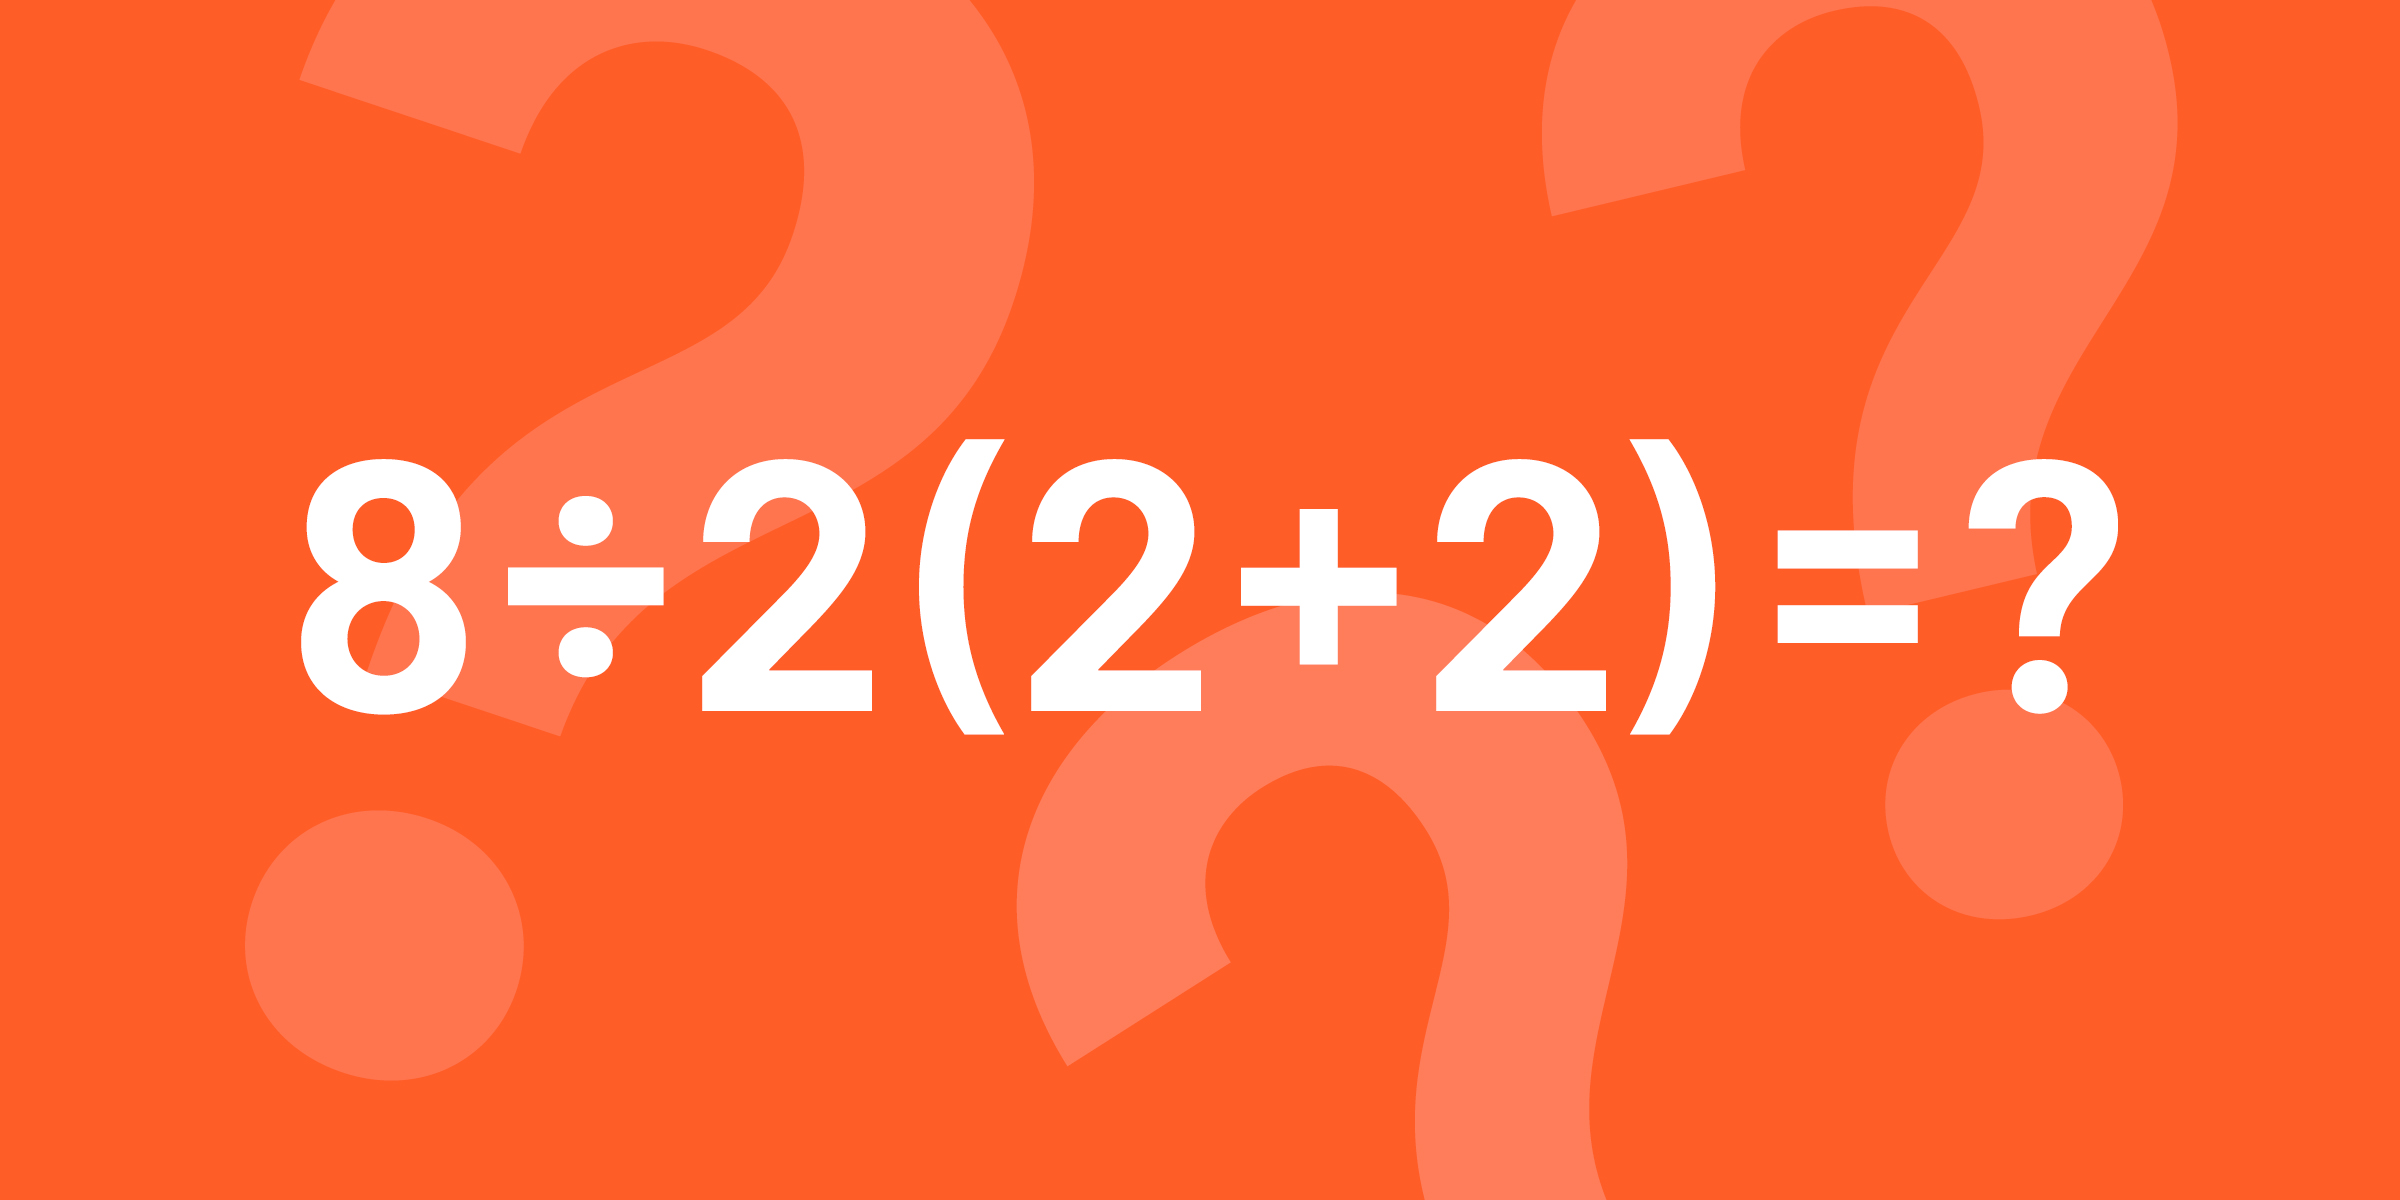 La question de maths devenue virale | Source : twitter.com/TheClearedMind